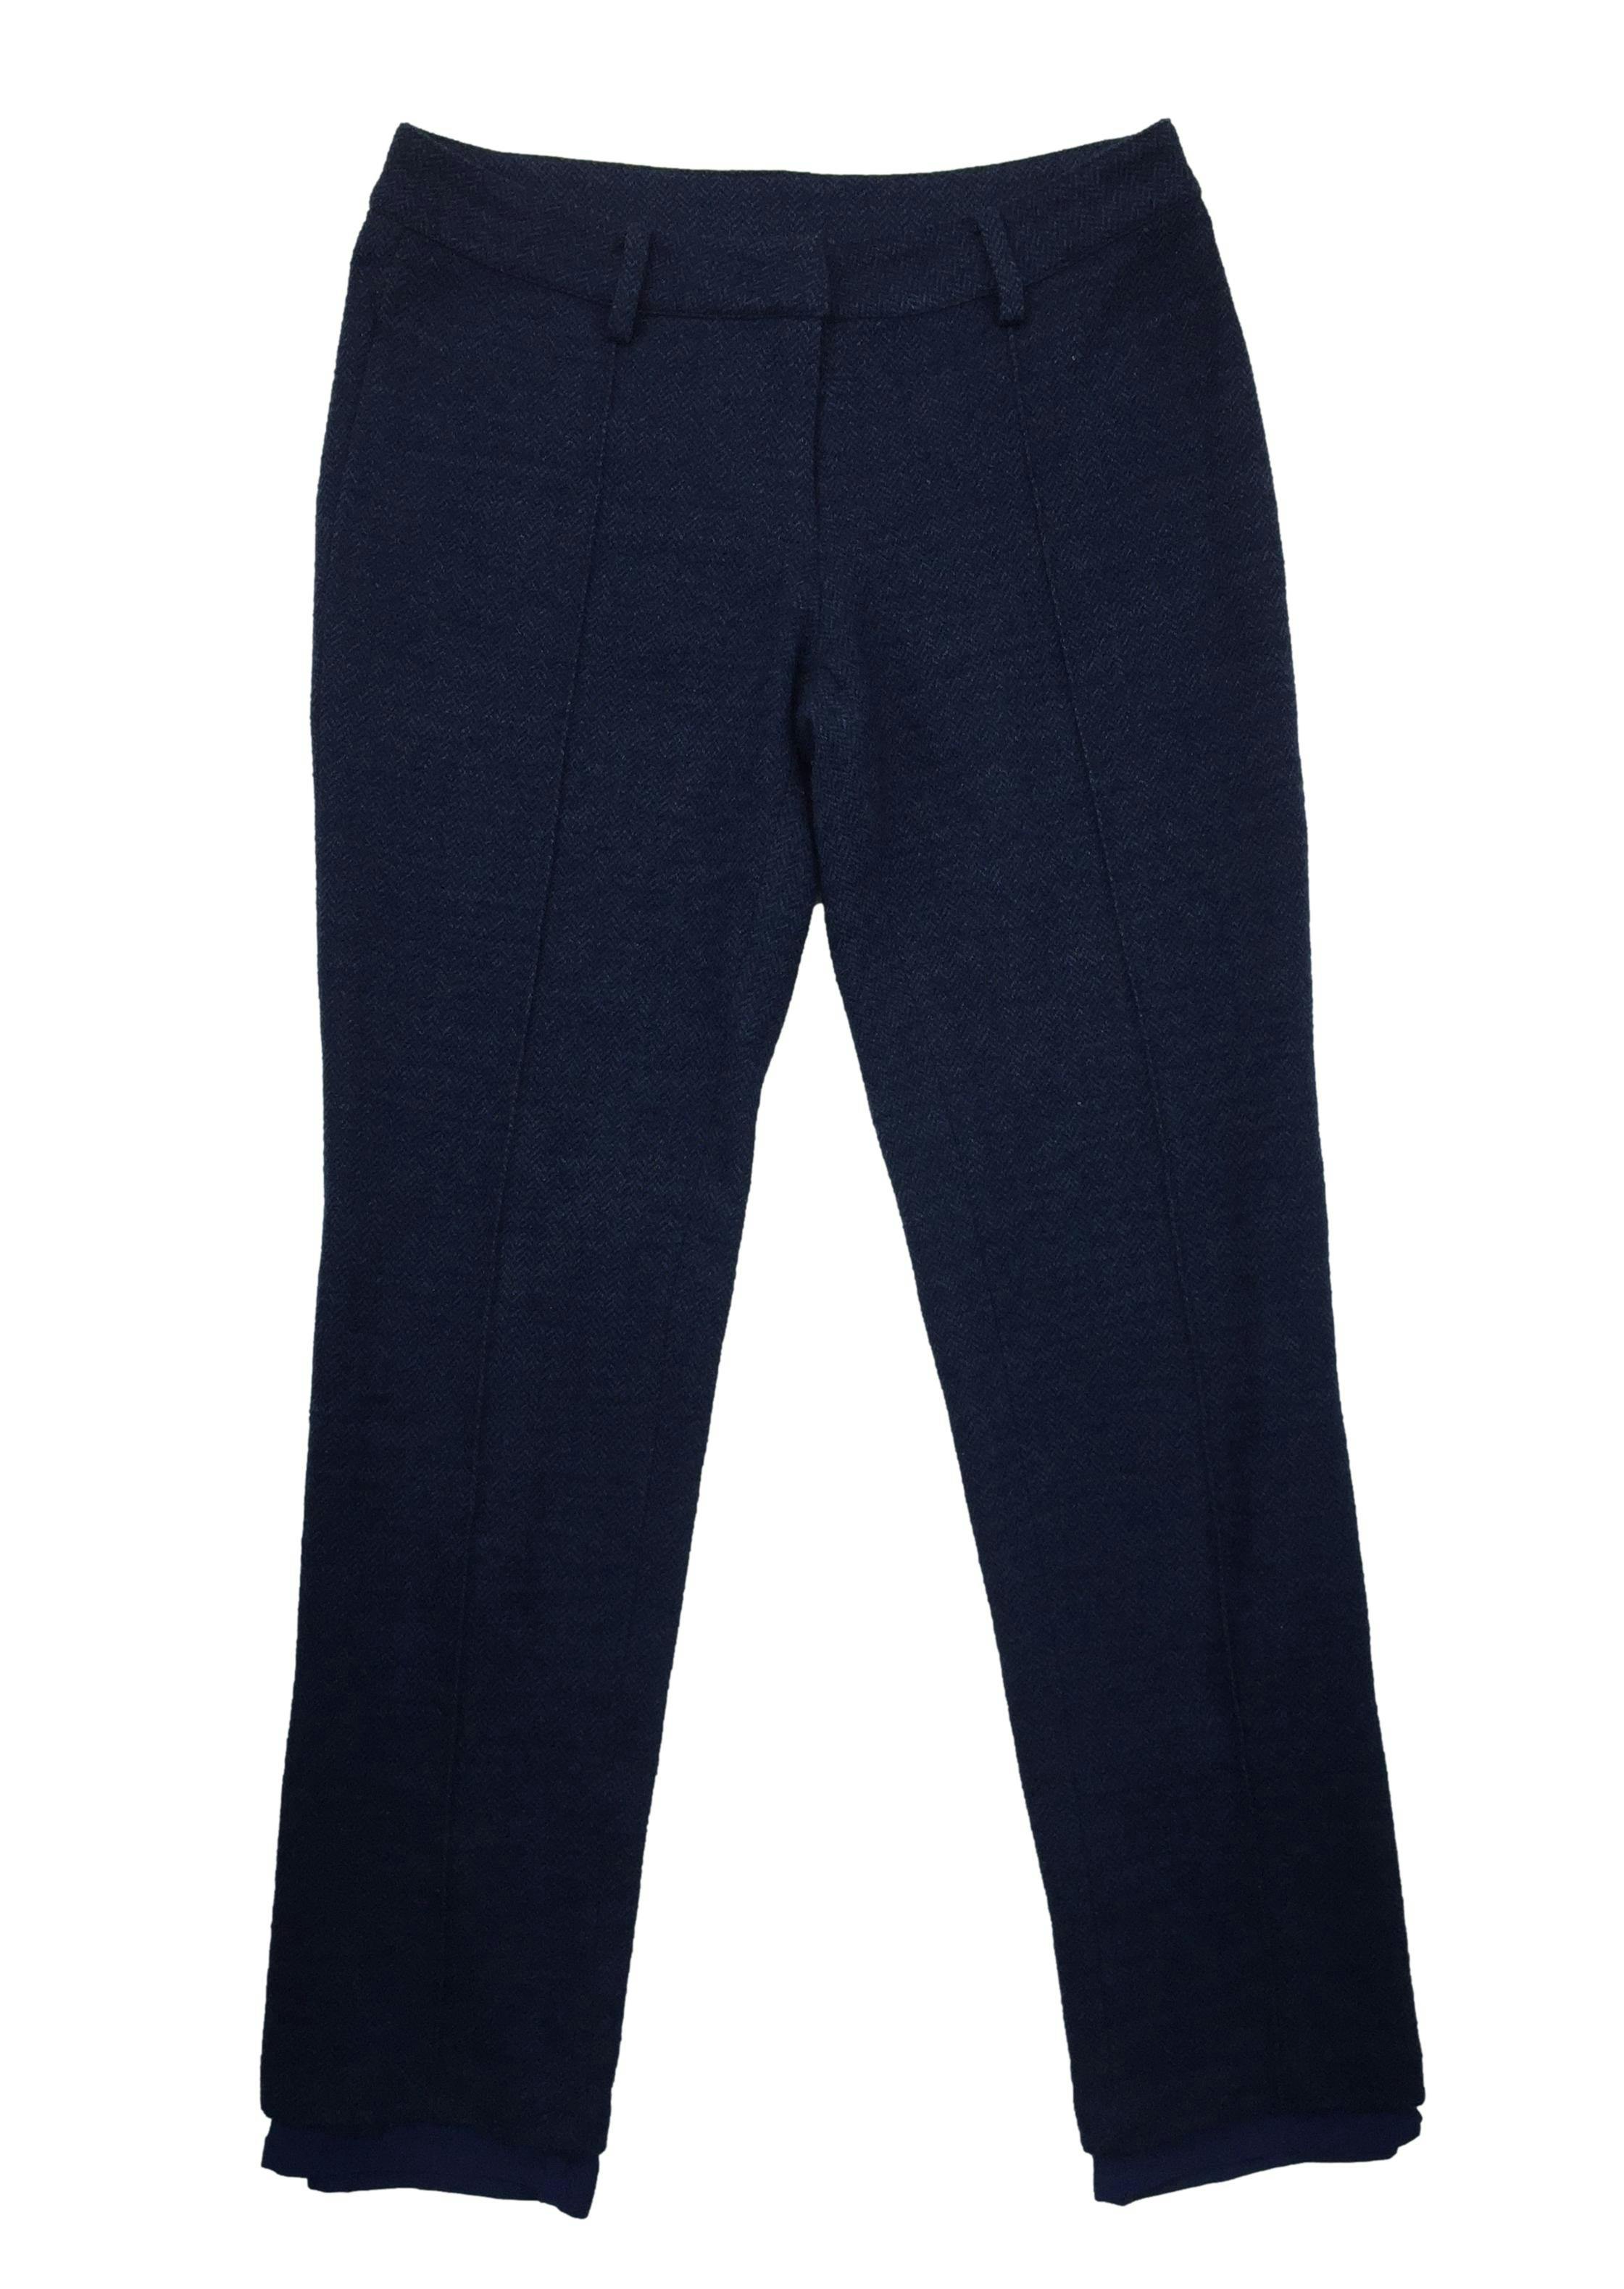 Pantalón Tommy Hilfiger azul de lanilla zig zag, forro, botón y cierre delantero. Cintura: 70cm, Tiro: 21cm, Largo: 86cm.